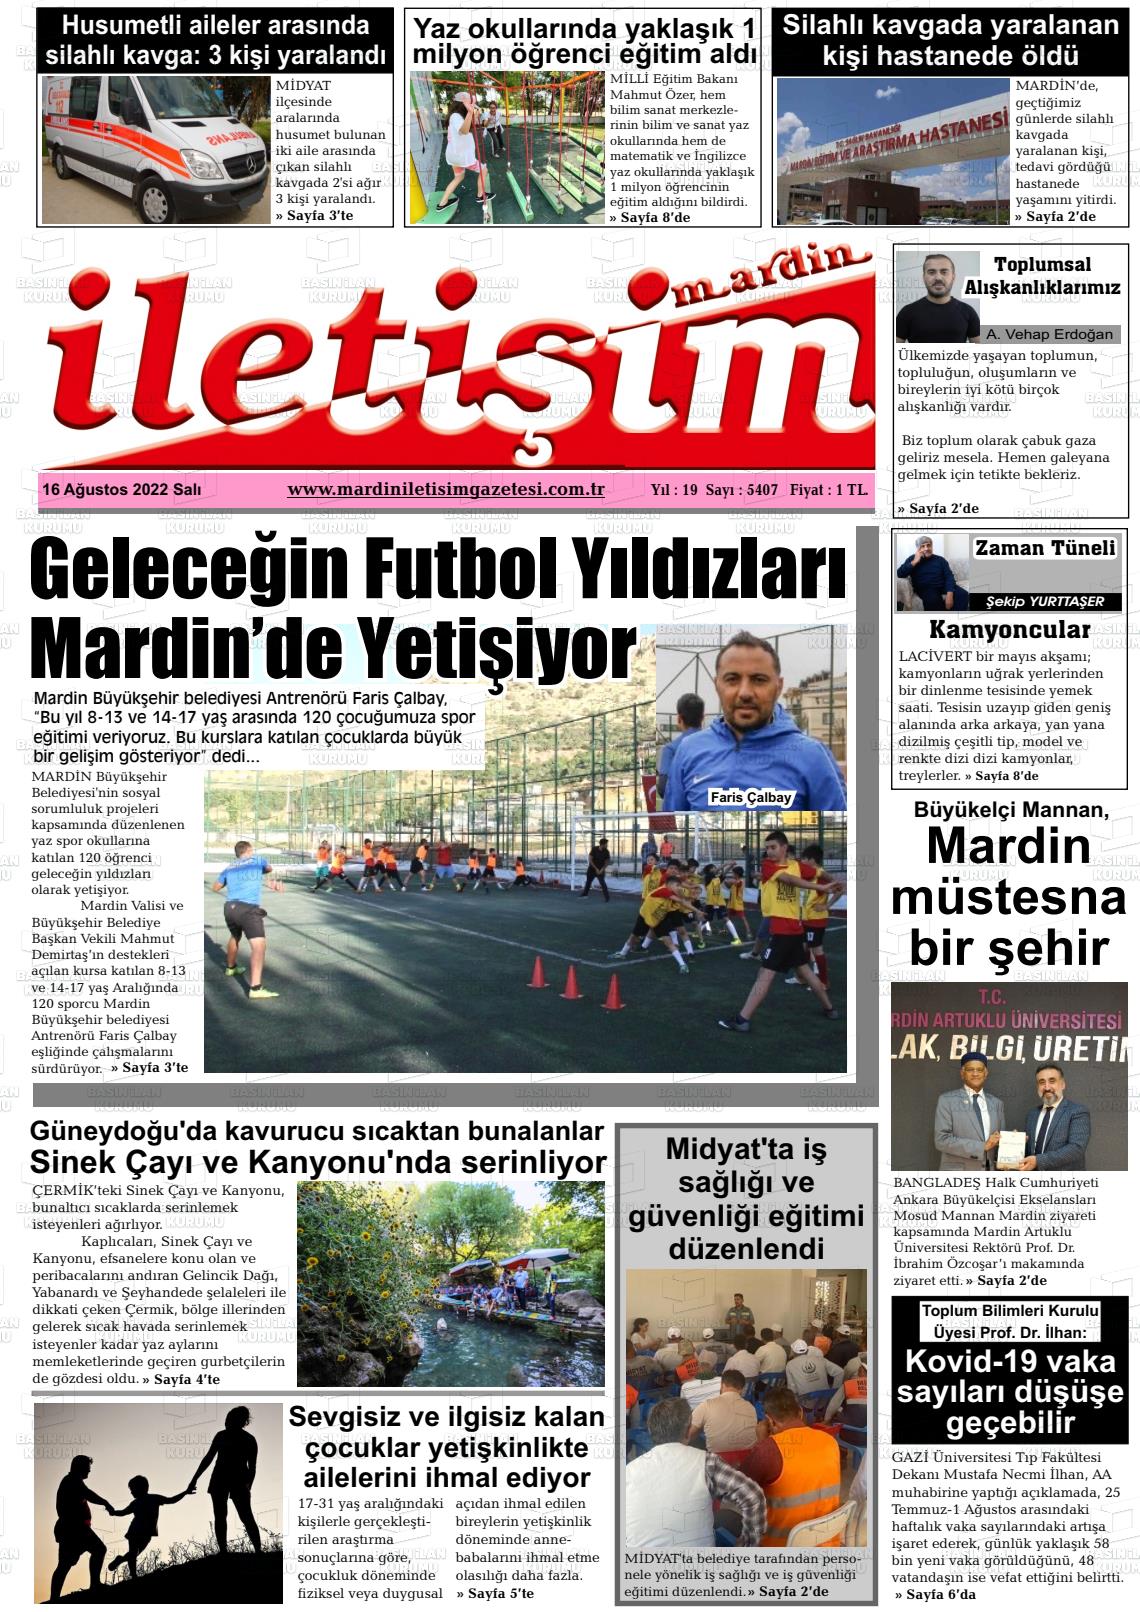 16 Ağustos 2022 Mardin İletişim Gazete Manşeti